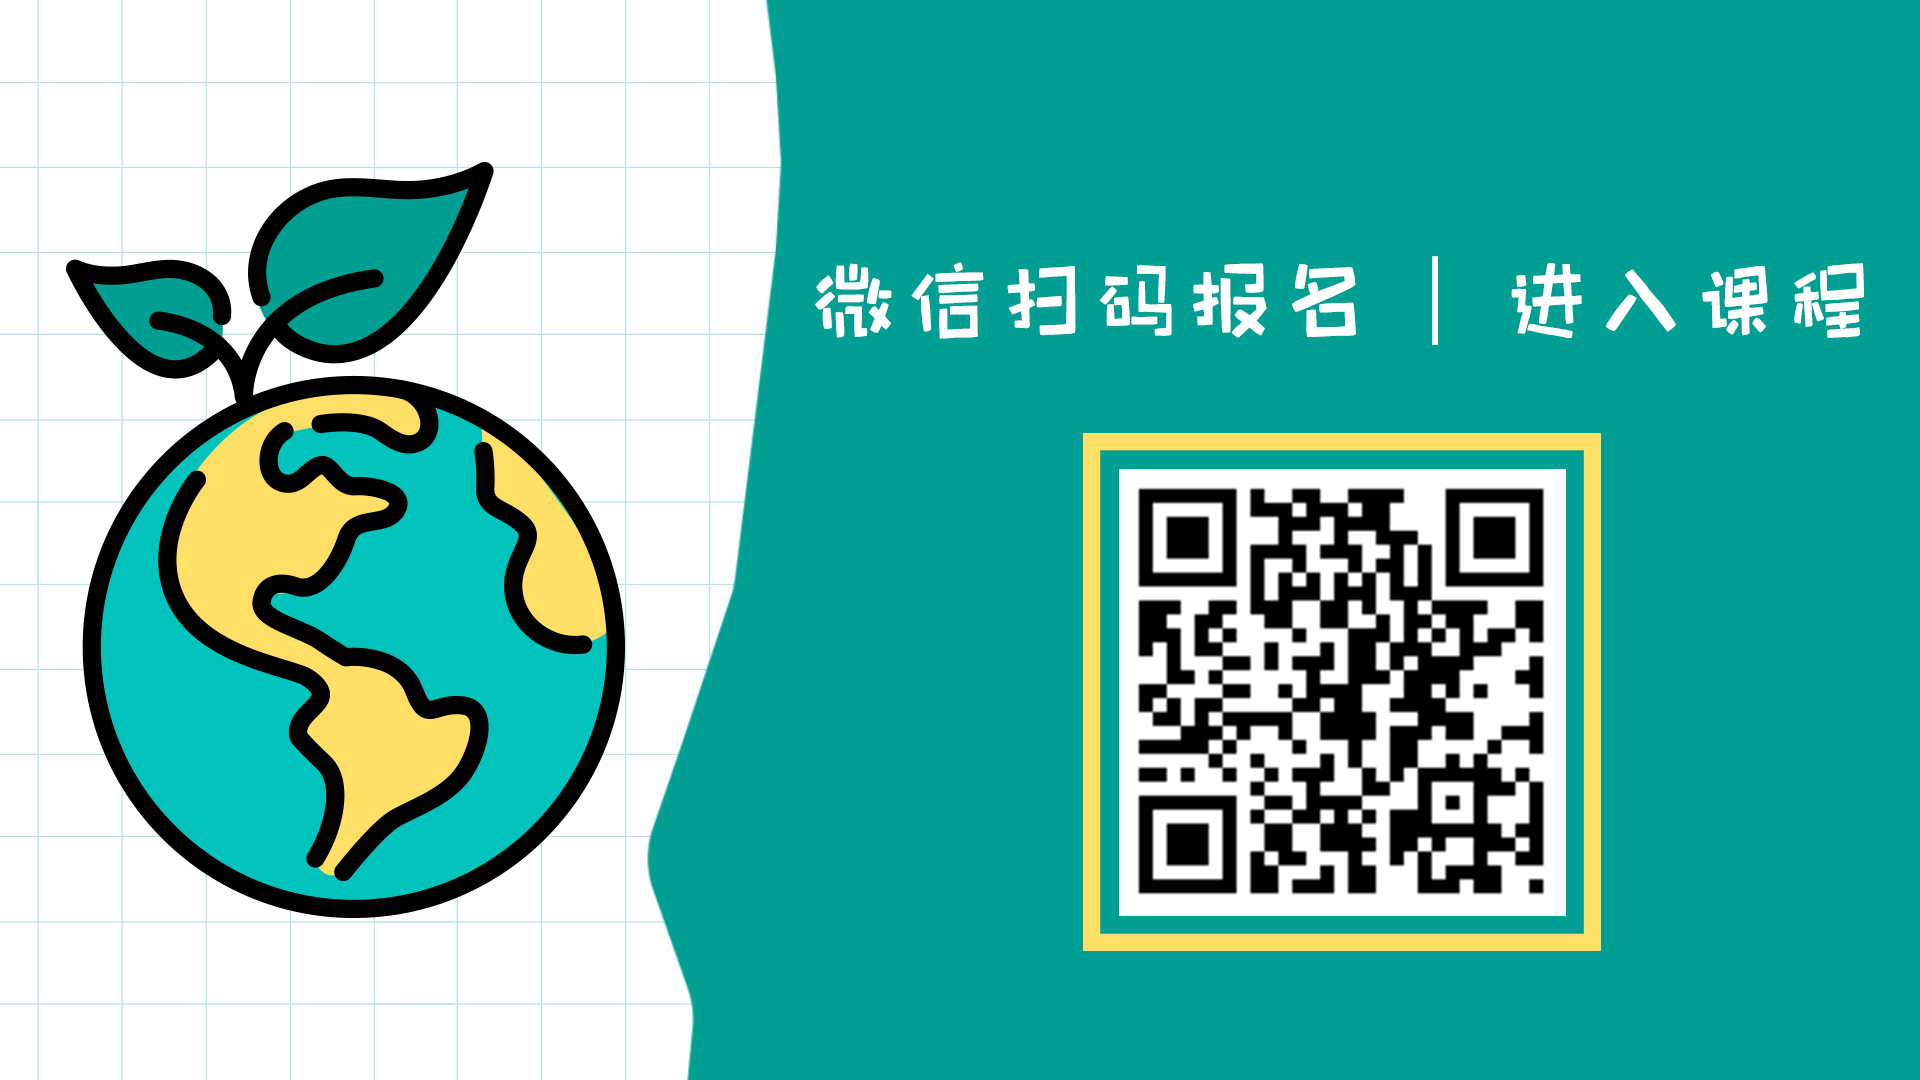 mandarin registration link